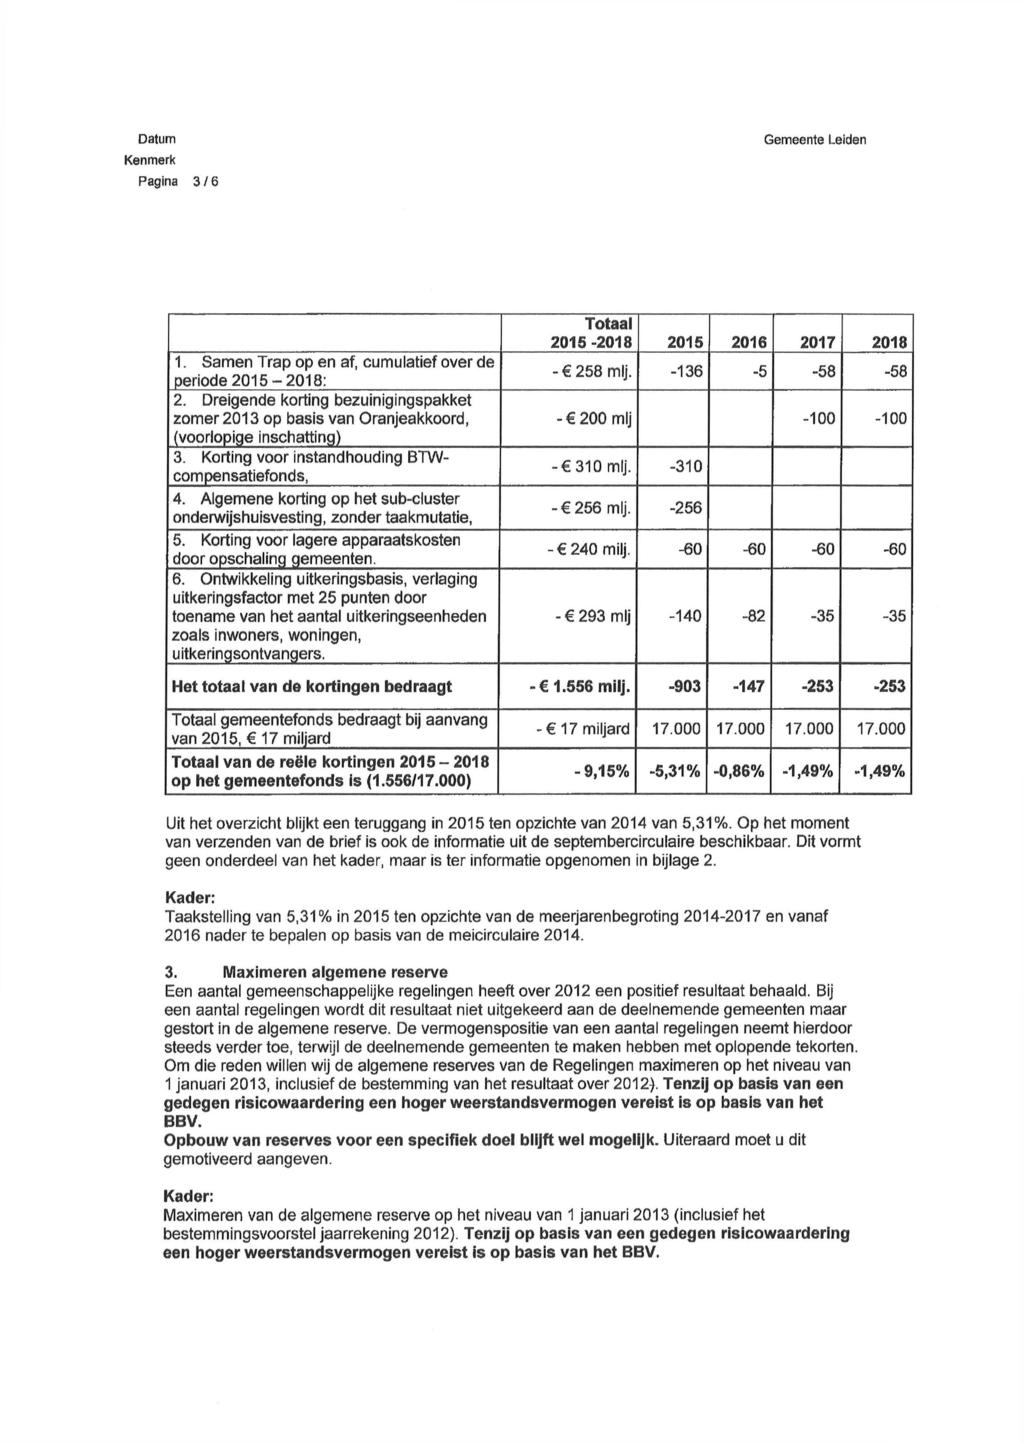 Pagina 316 1. Samen Trap op en af, cumulatief over de periode 2015-2018: 2. Dreigende korting bezuinigingspakket zomer 2013 op basis van Oranjeakkoord, (voorlopige inschatting) 3.